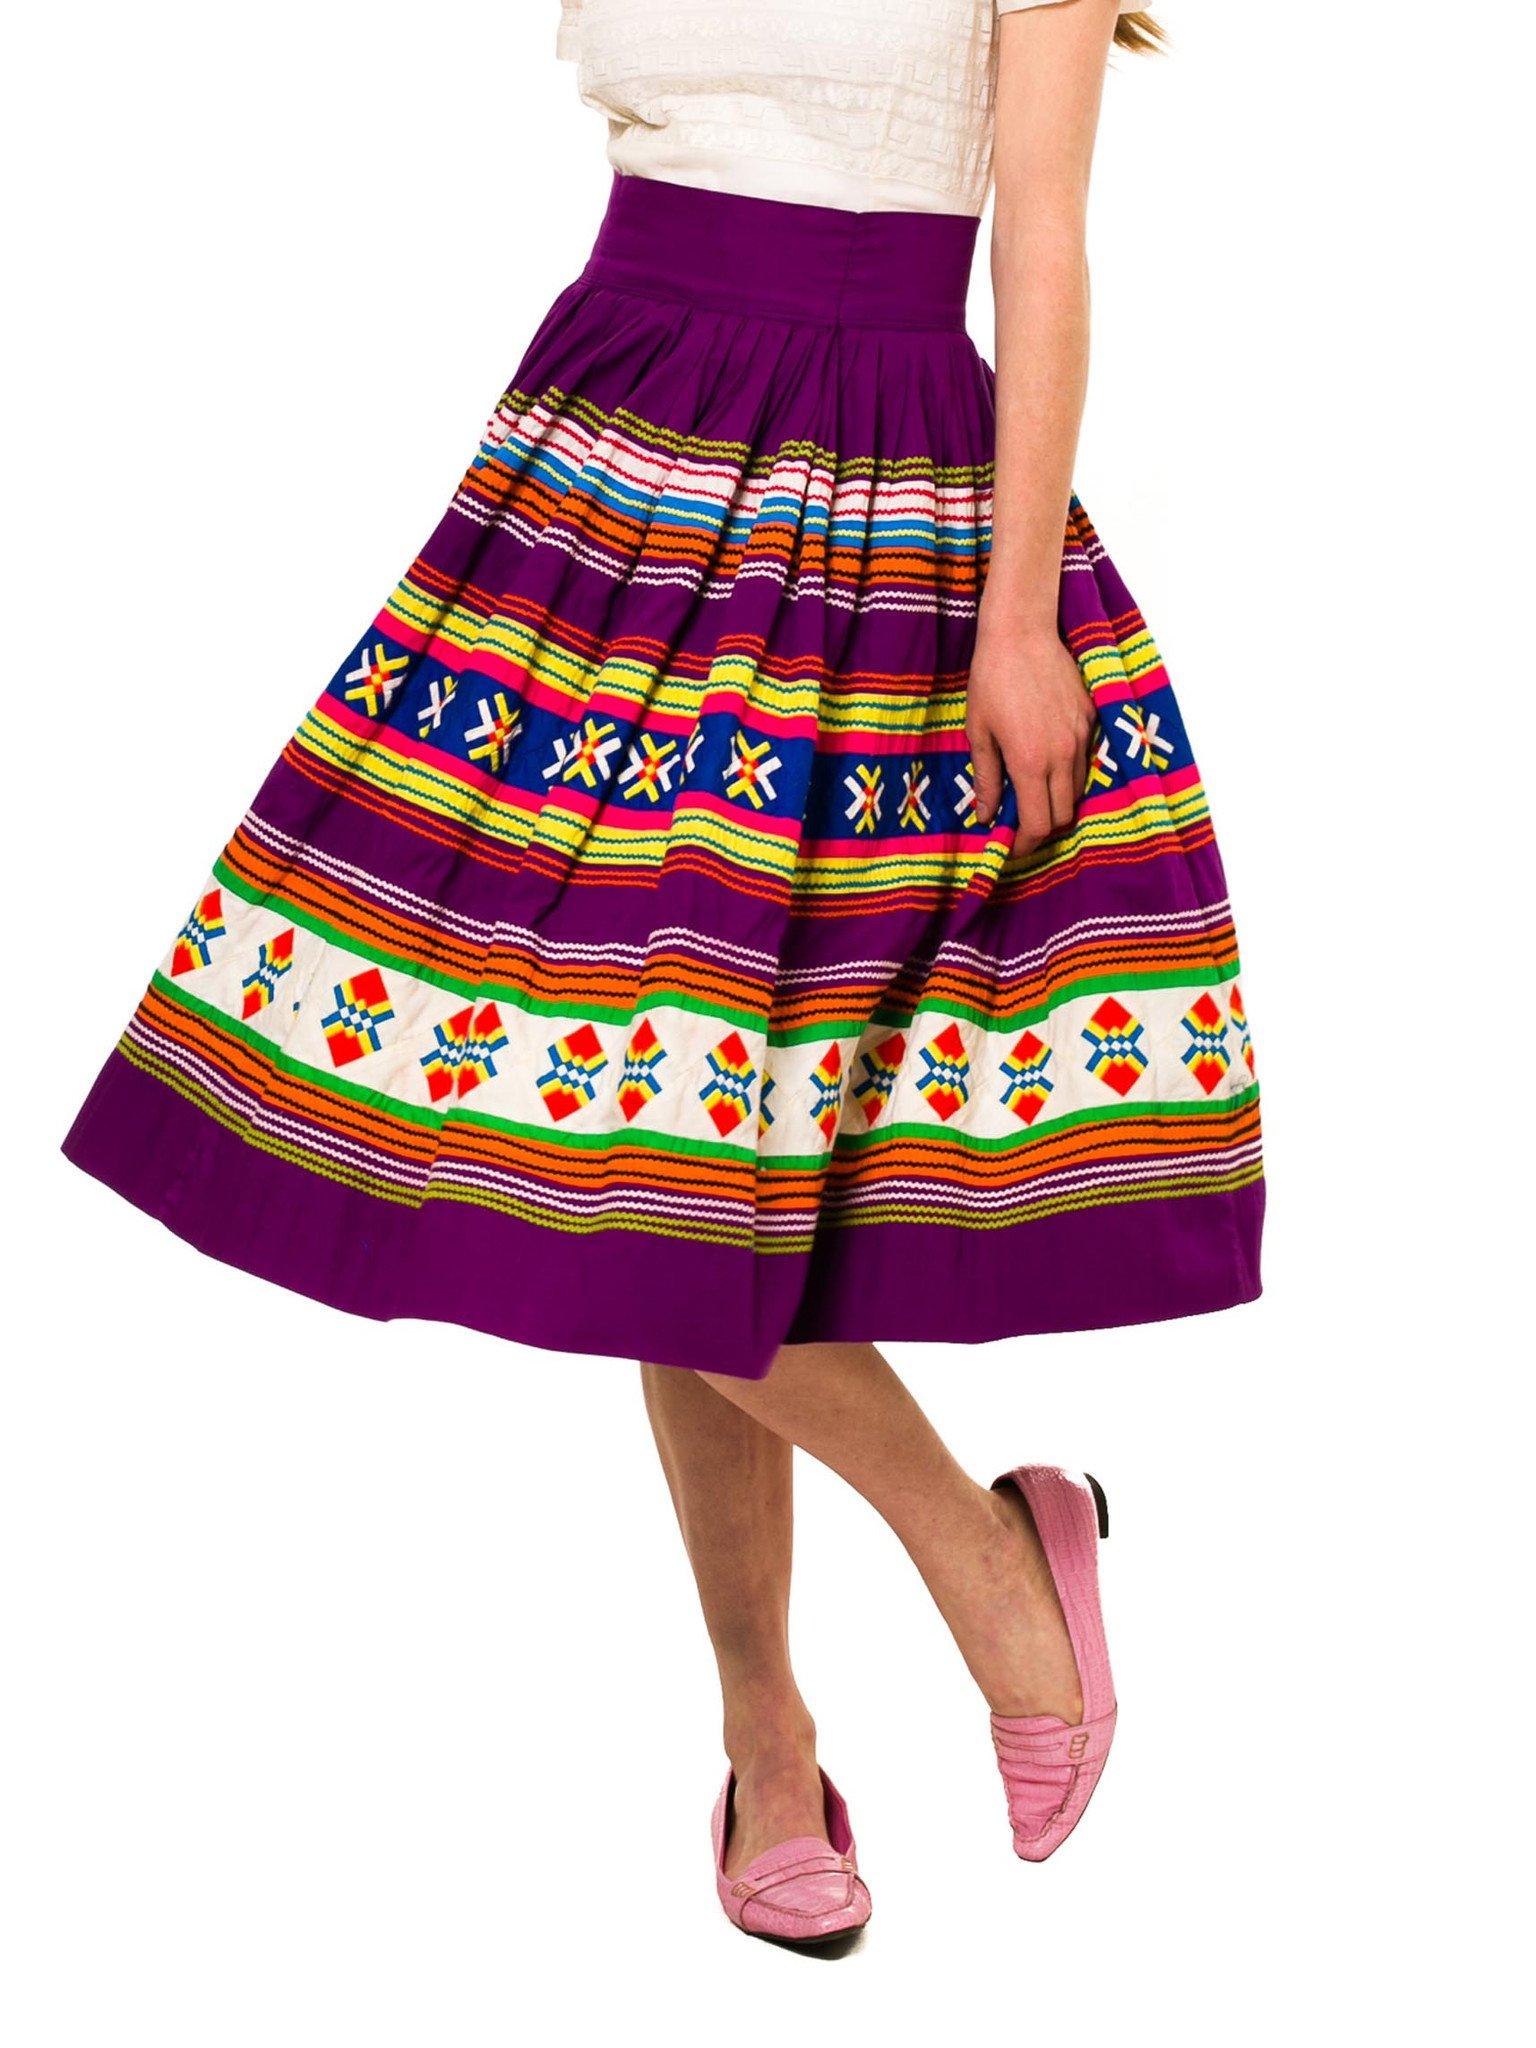 jupe en coton pourpre multicolore en patchwork des années 1950 pour les Indiens Séminoles de Floride